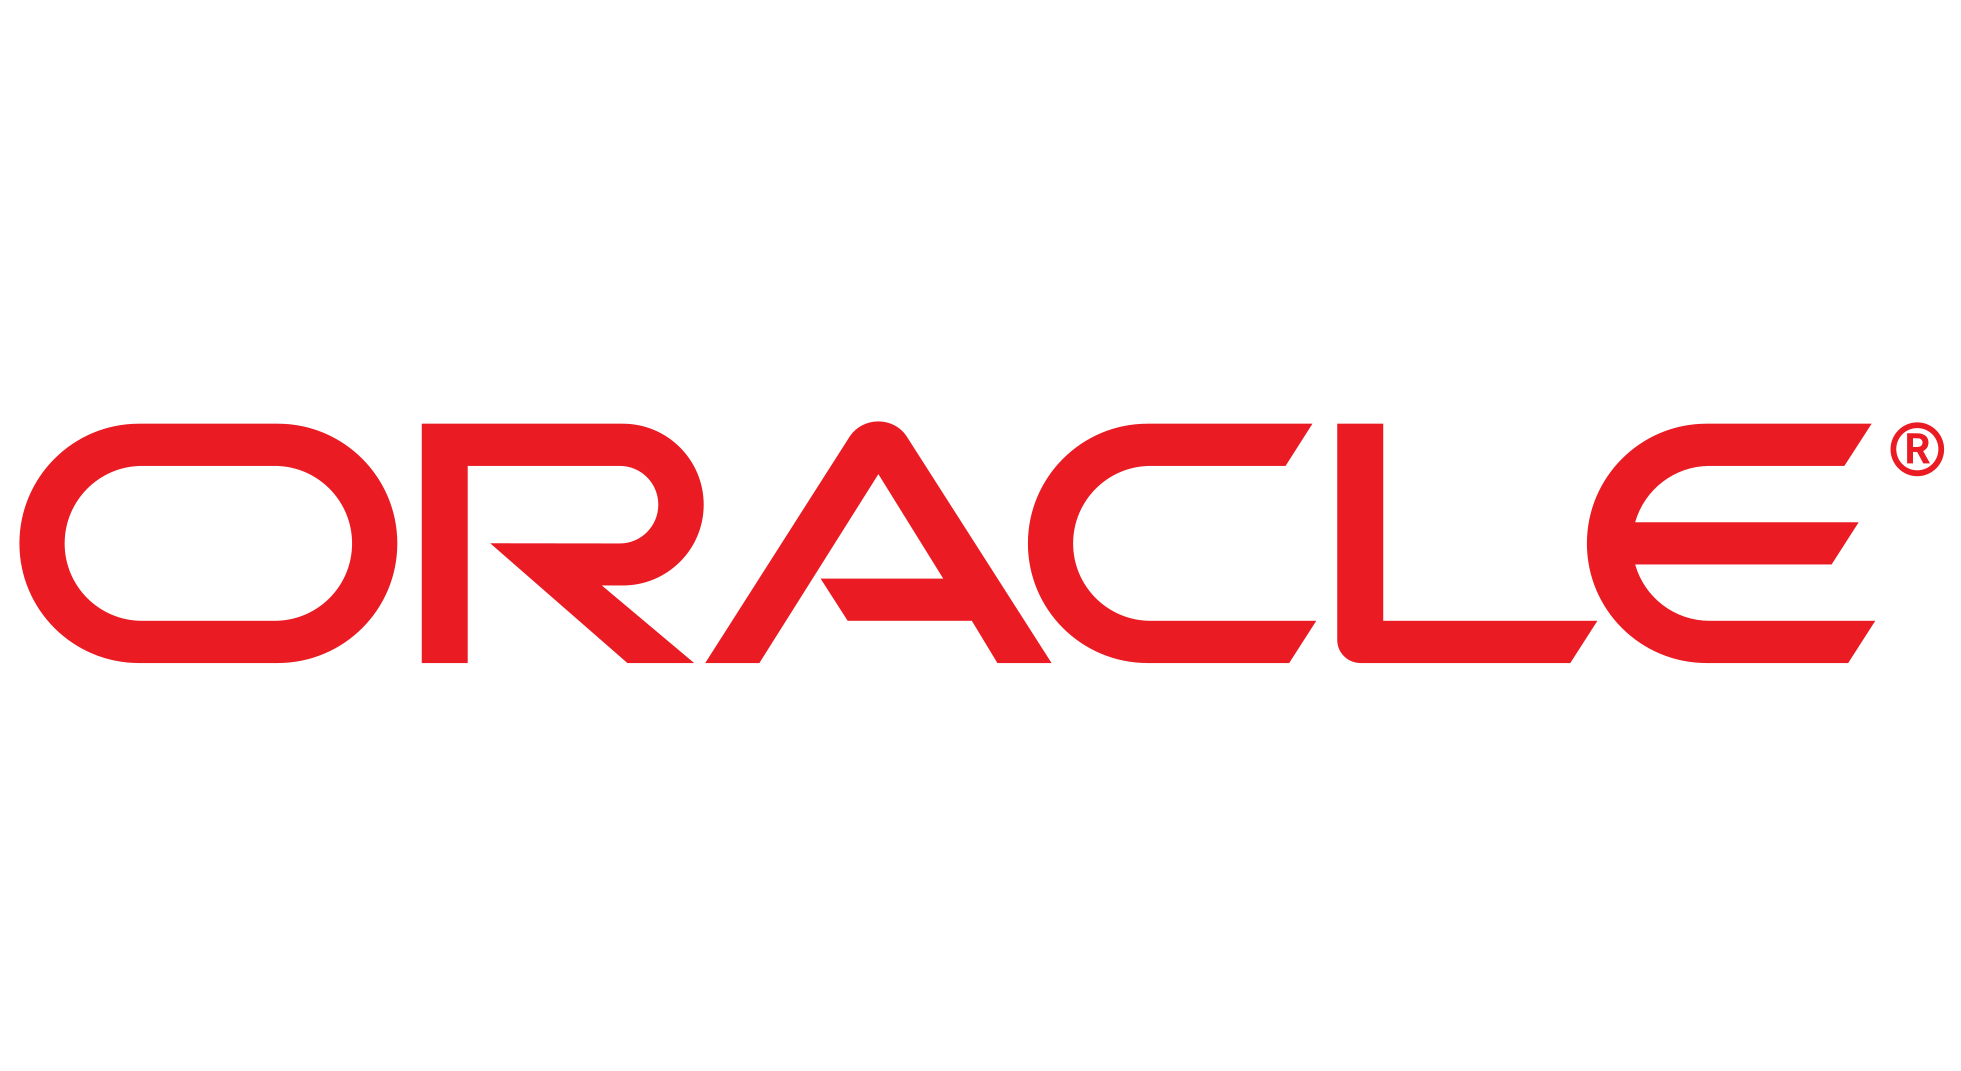 Oracle R&D